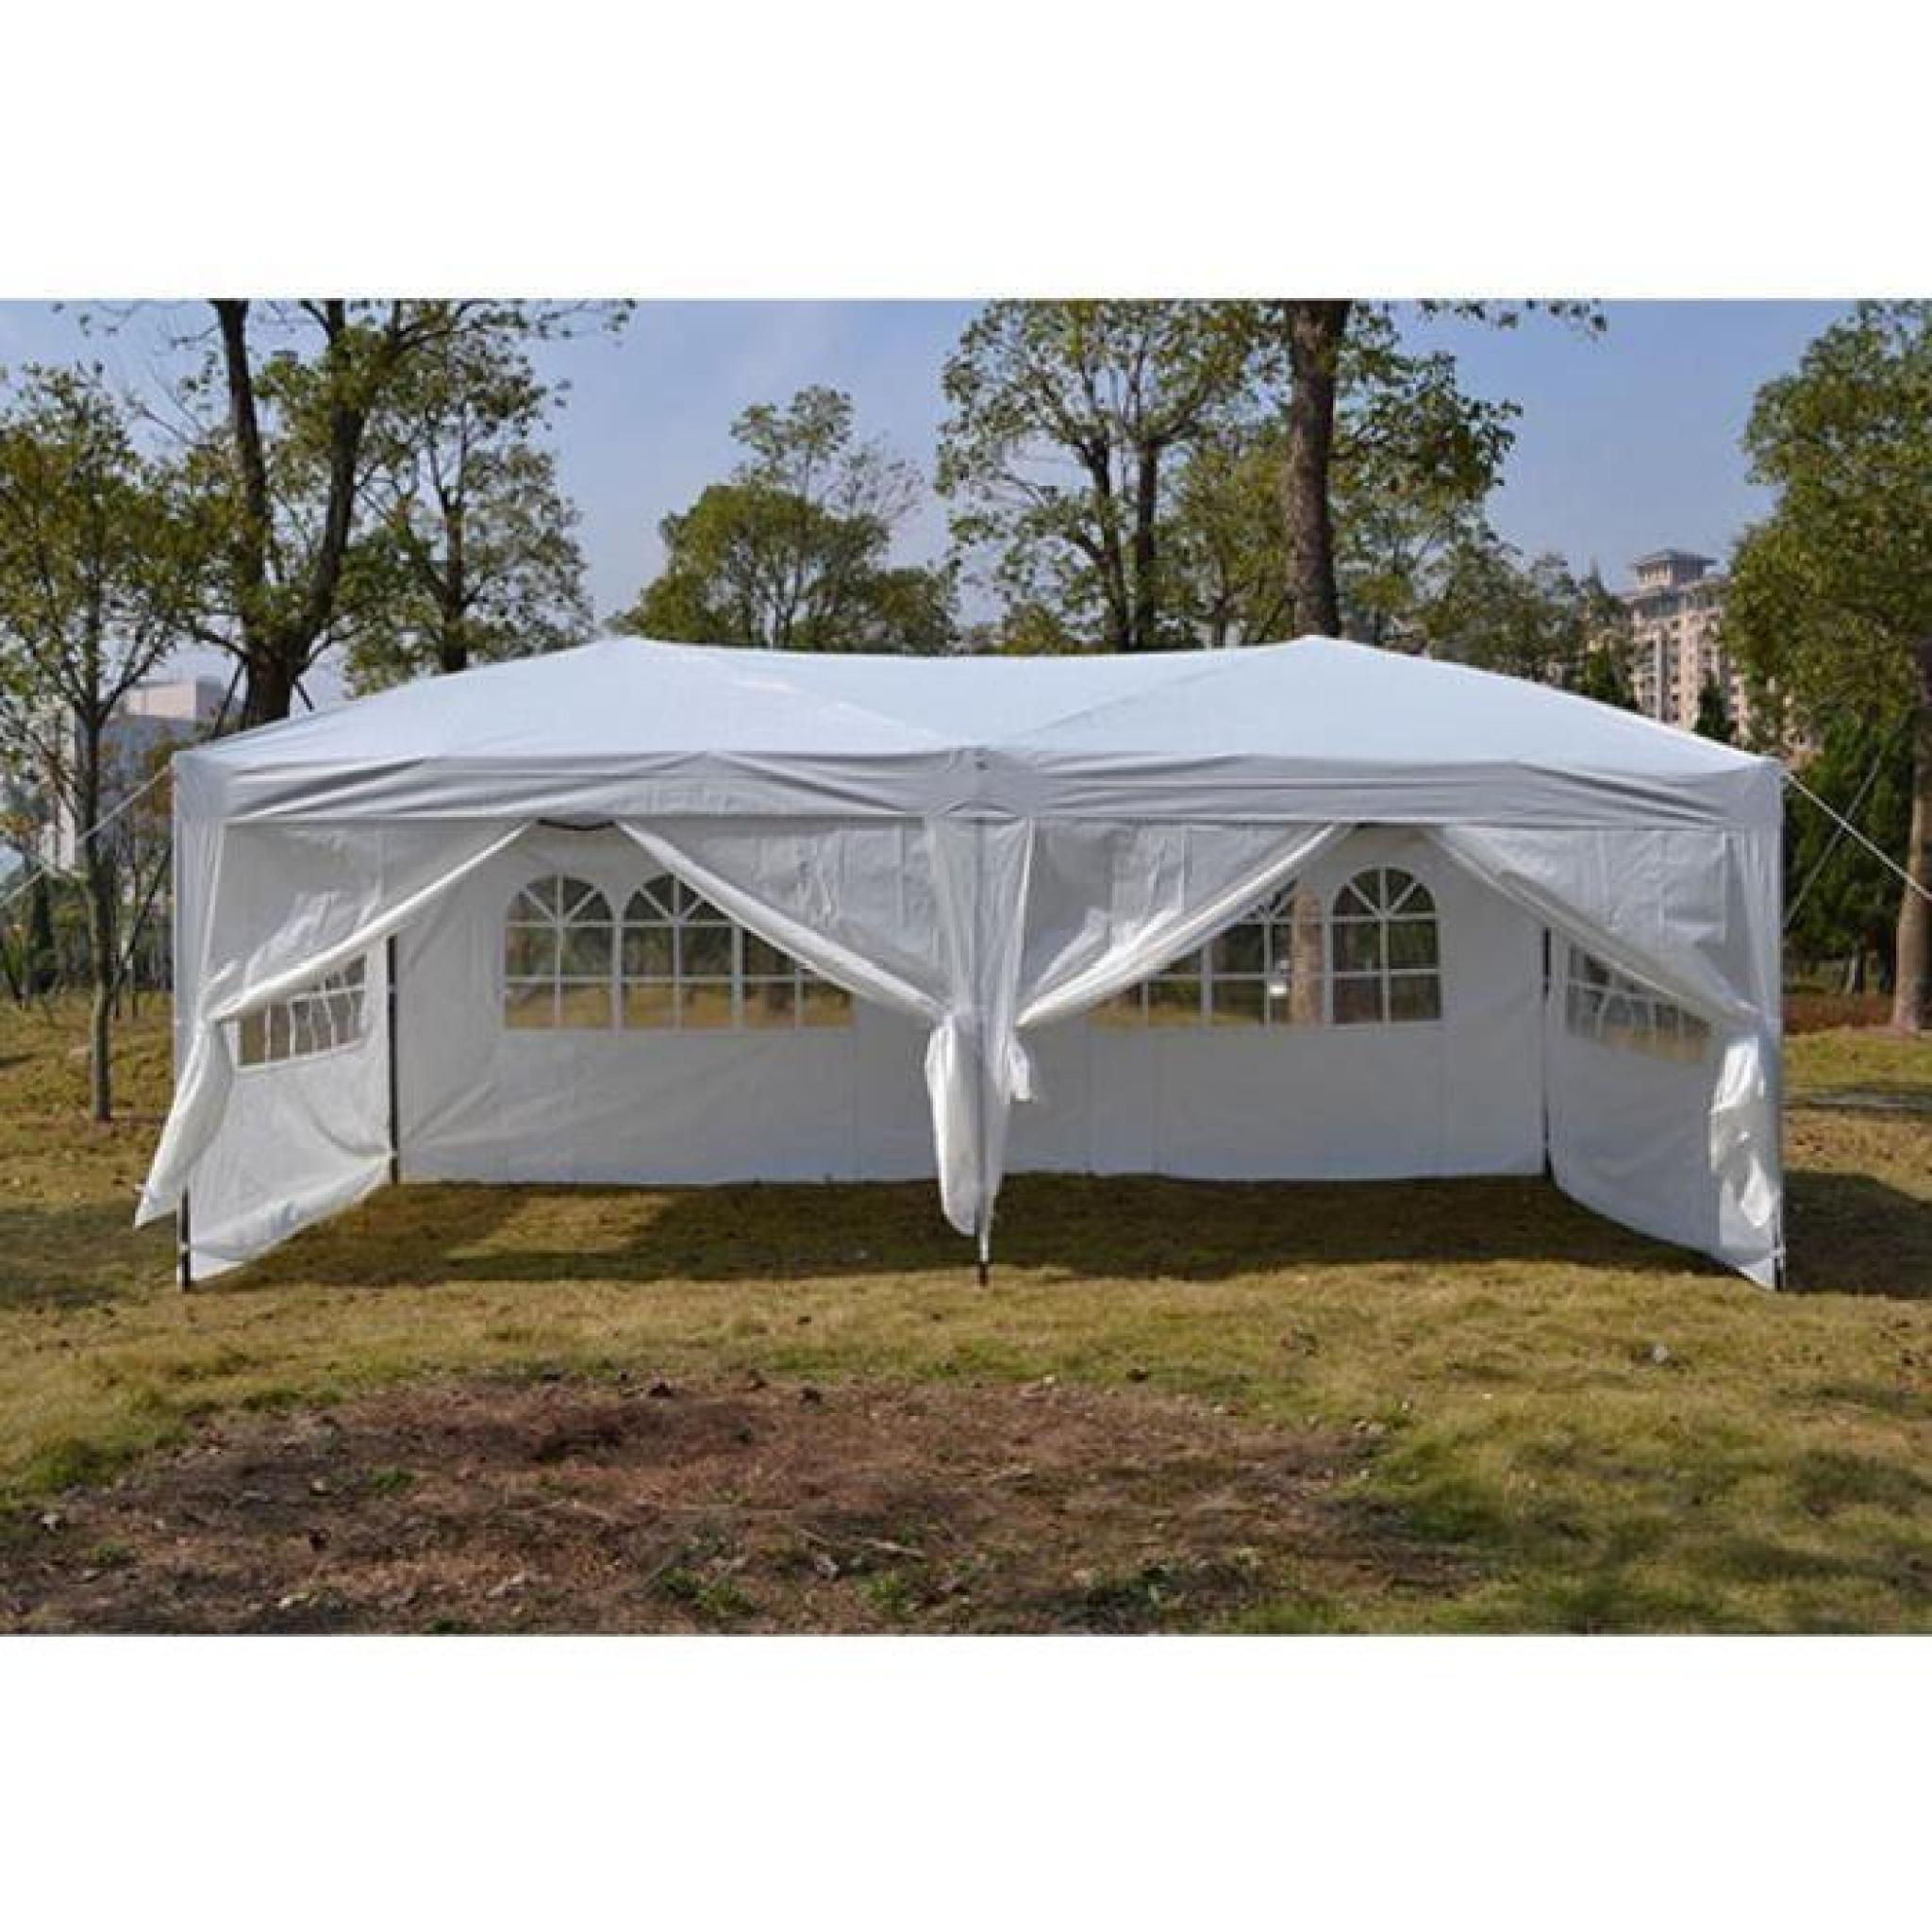 MaxxGarden Tente de réception Pliante 3x3 à Utiliser comme pavillon Tente de Jardin chapiteau tonnelle pergola 